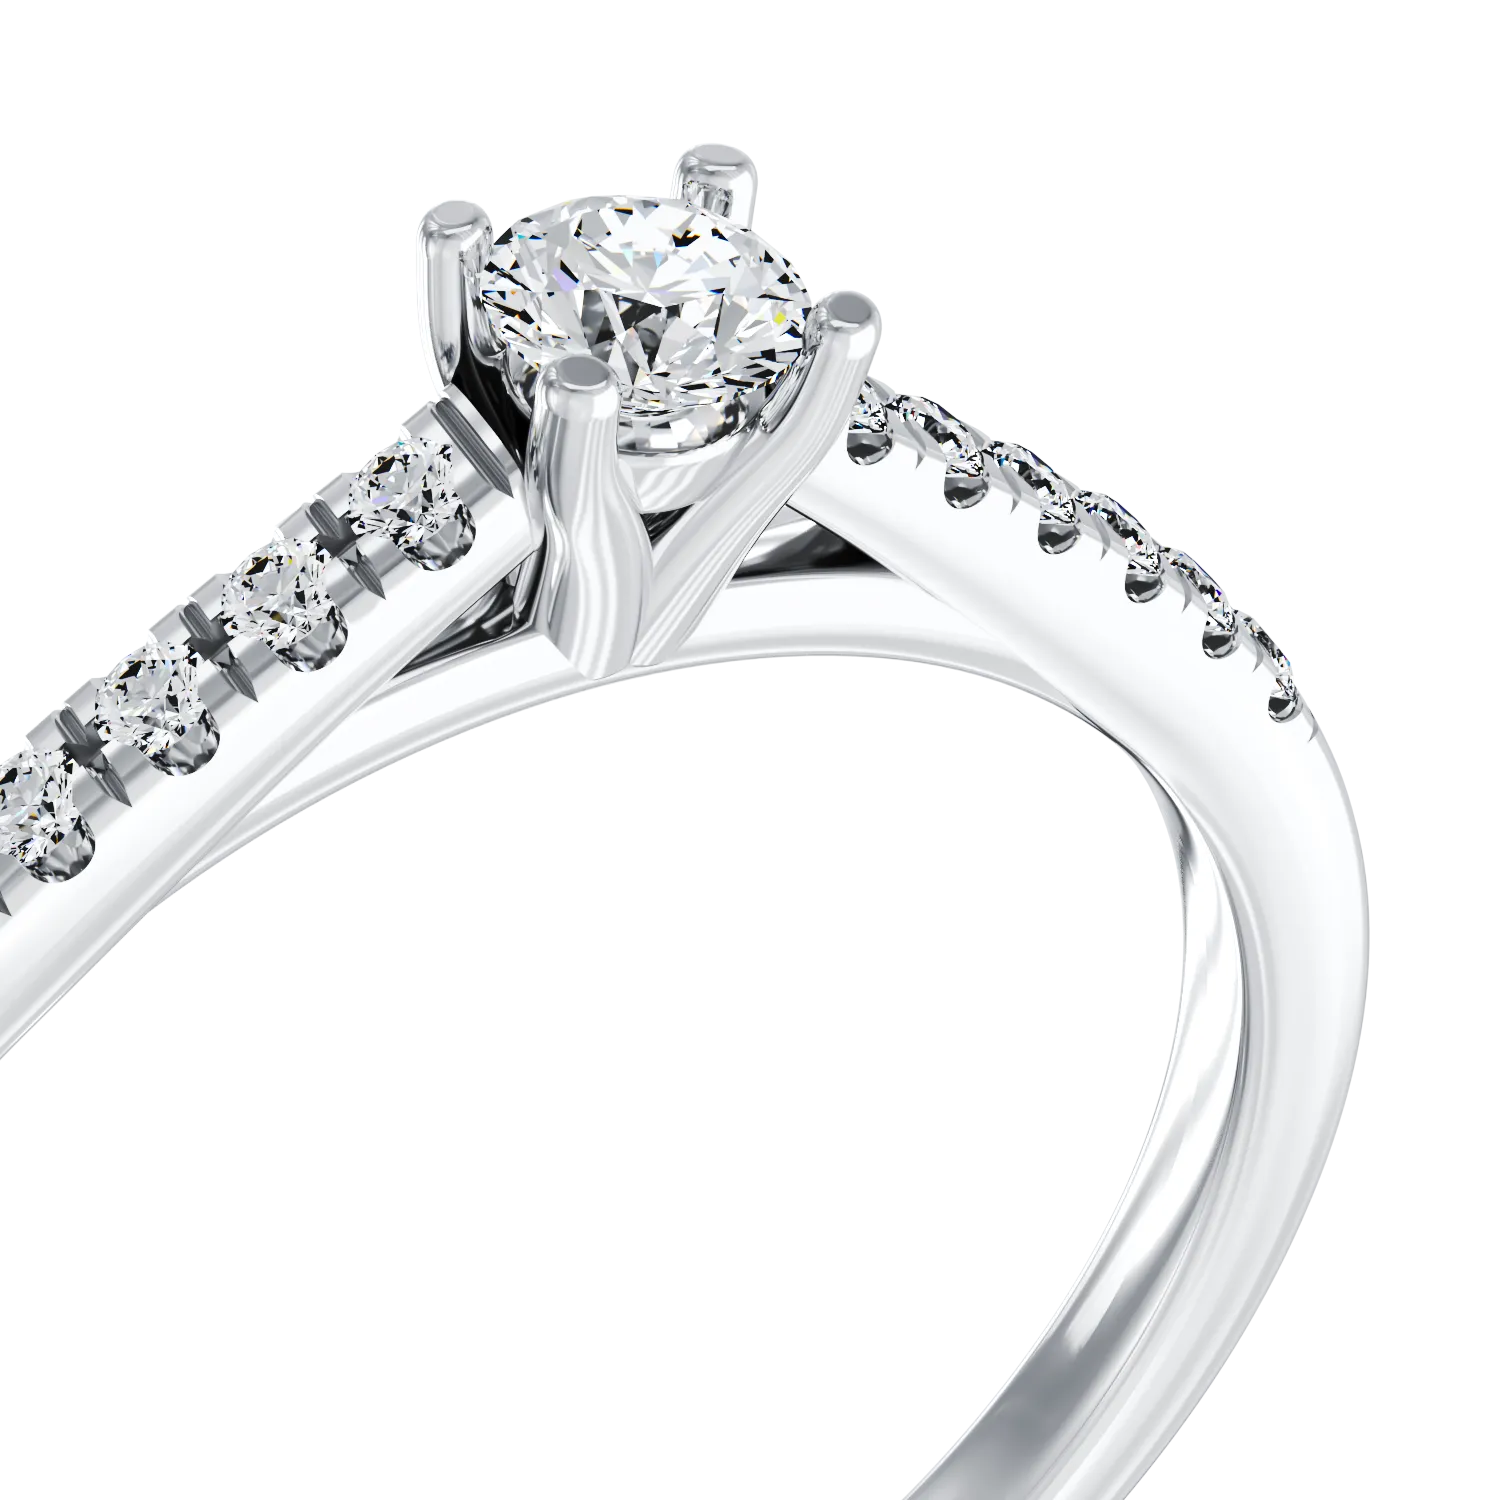 18 karátos fehérarany eljegyzési gyűrű 0.3 karátos gyémánttal és 0.13 karátos gyémánttal